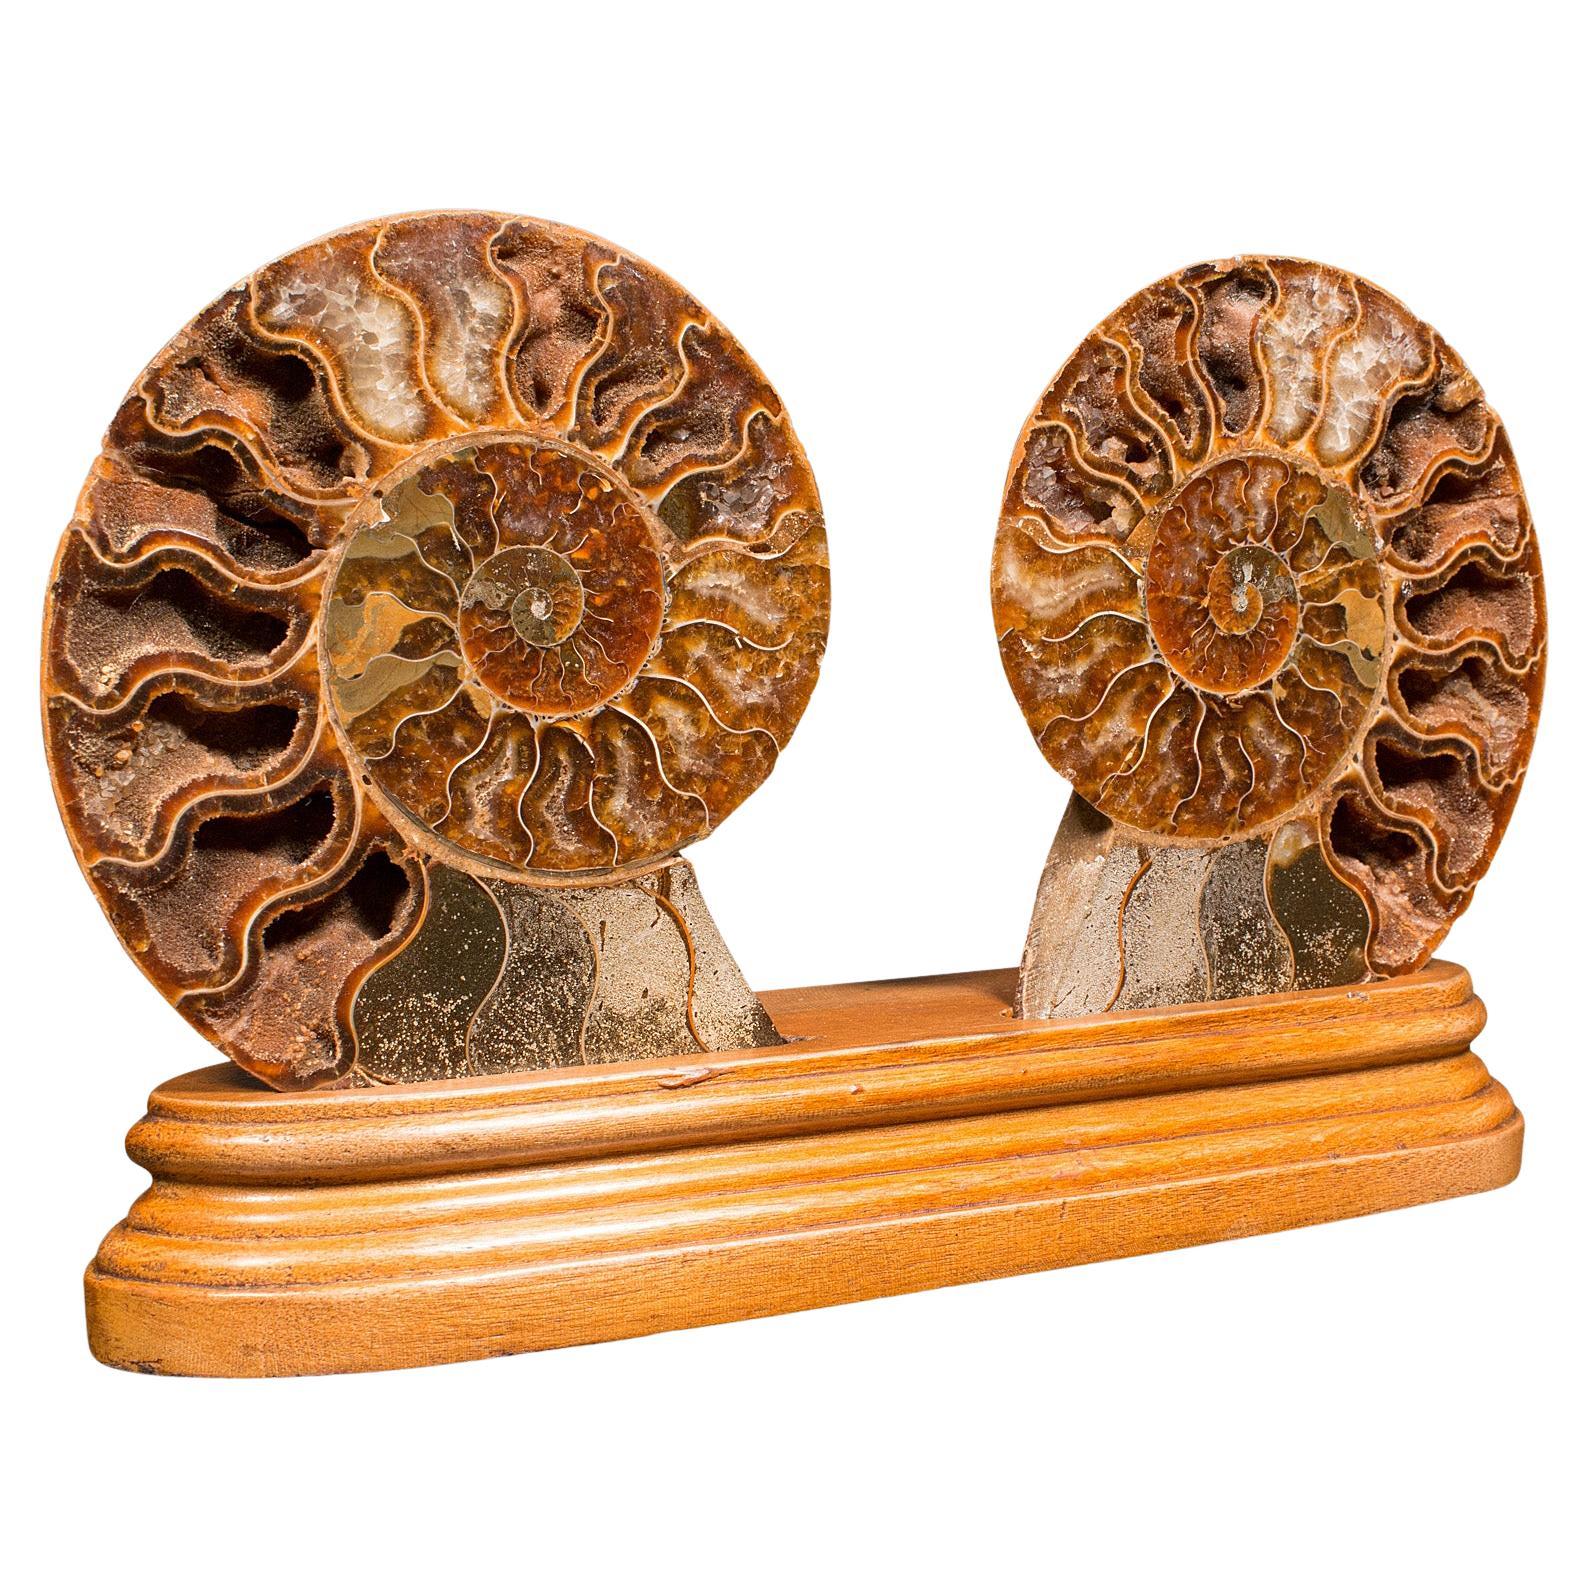 Ammonite vintage décorative dos nu, africaine, fossile, socle d'exposition, crête